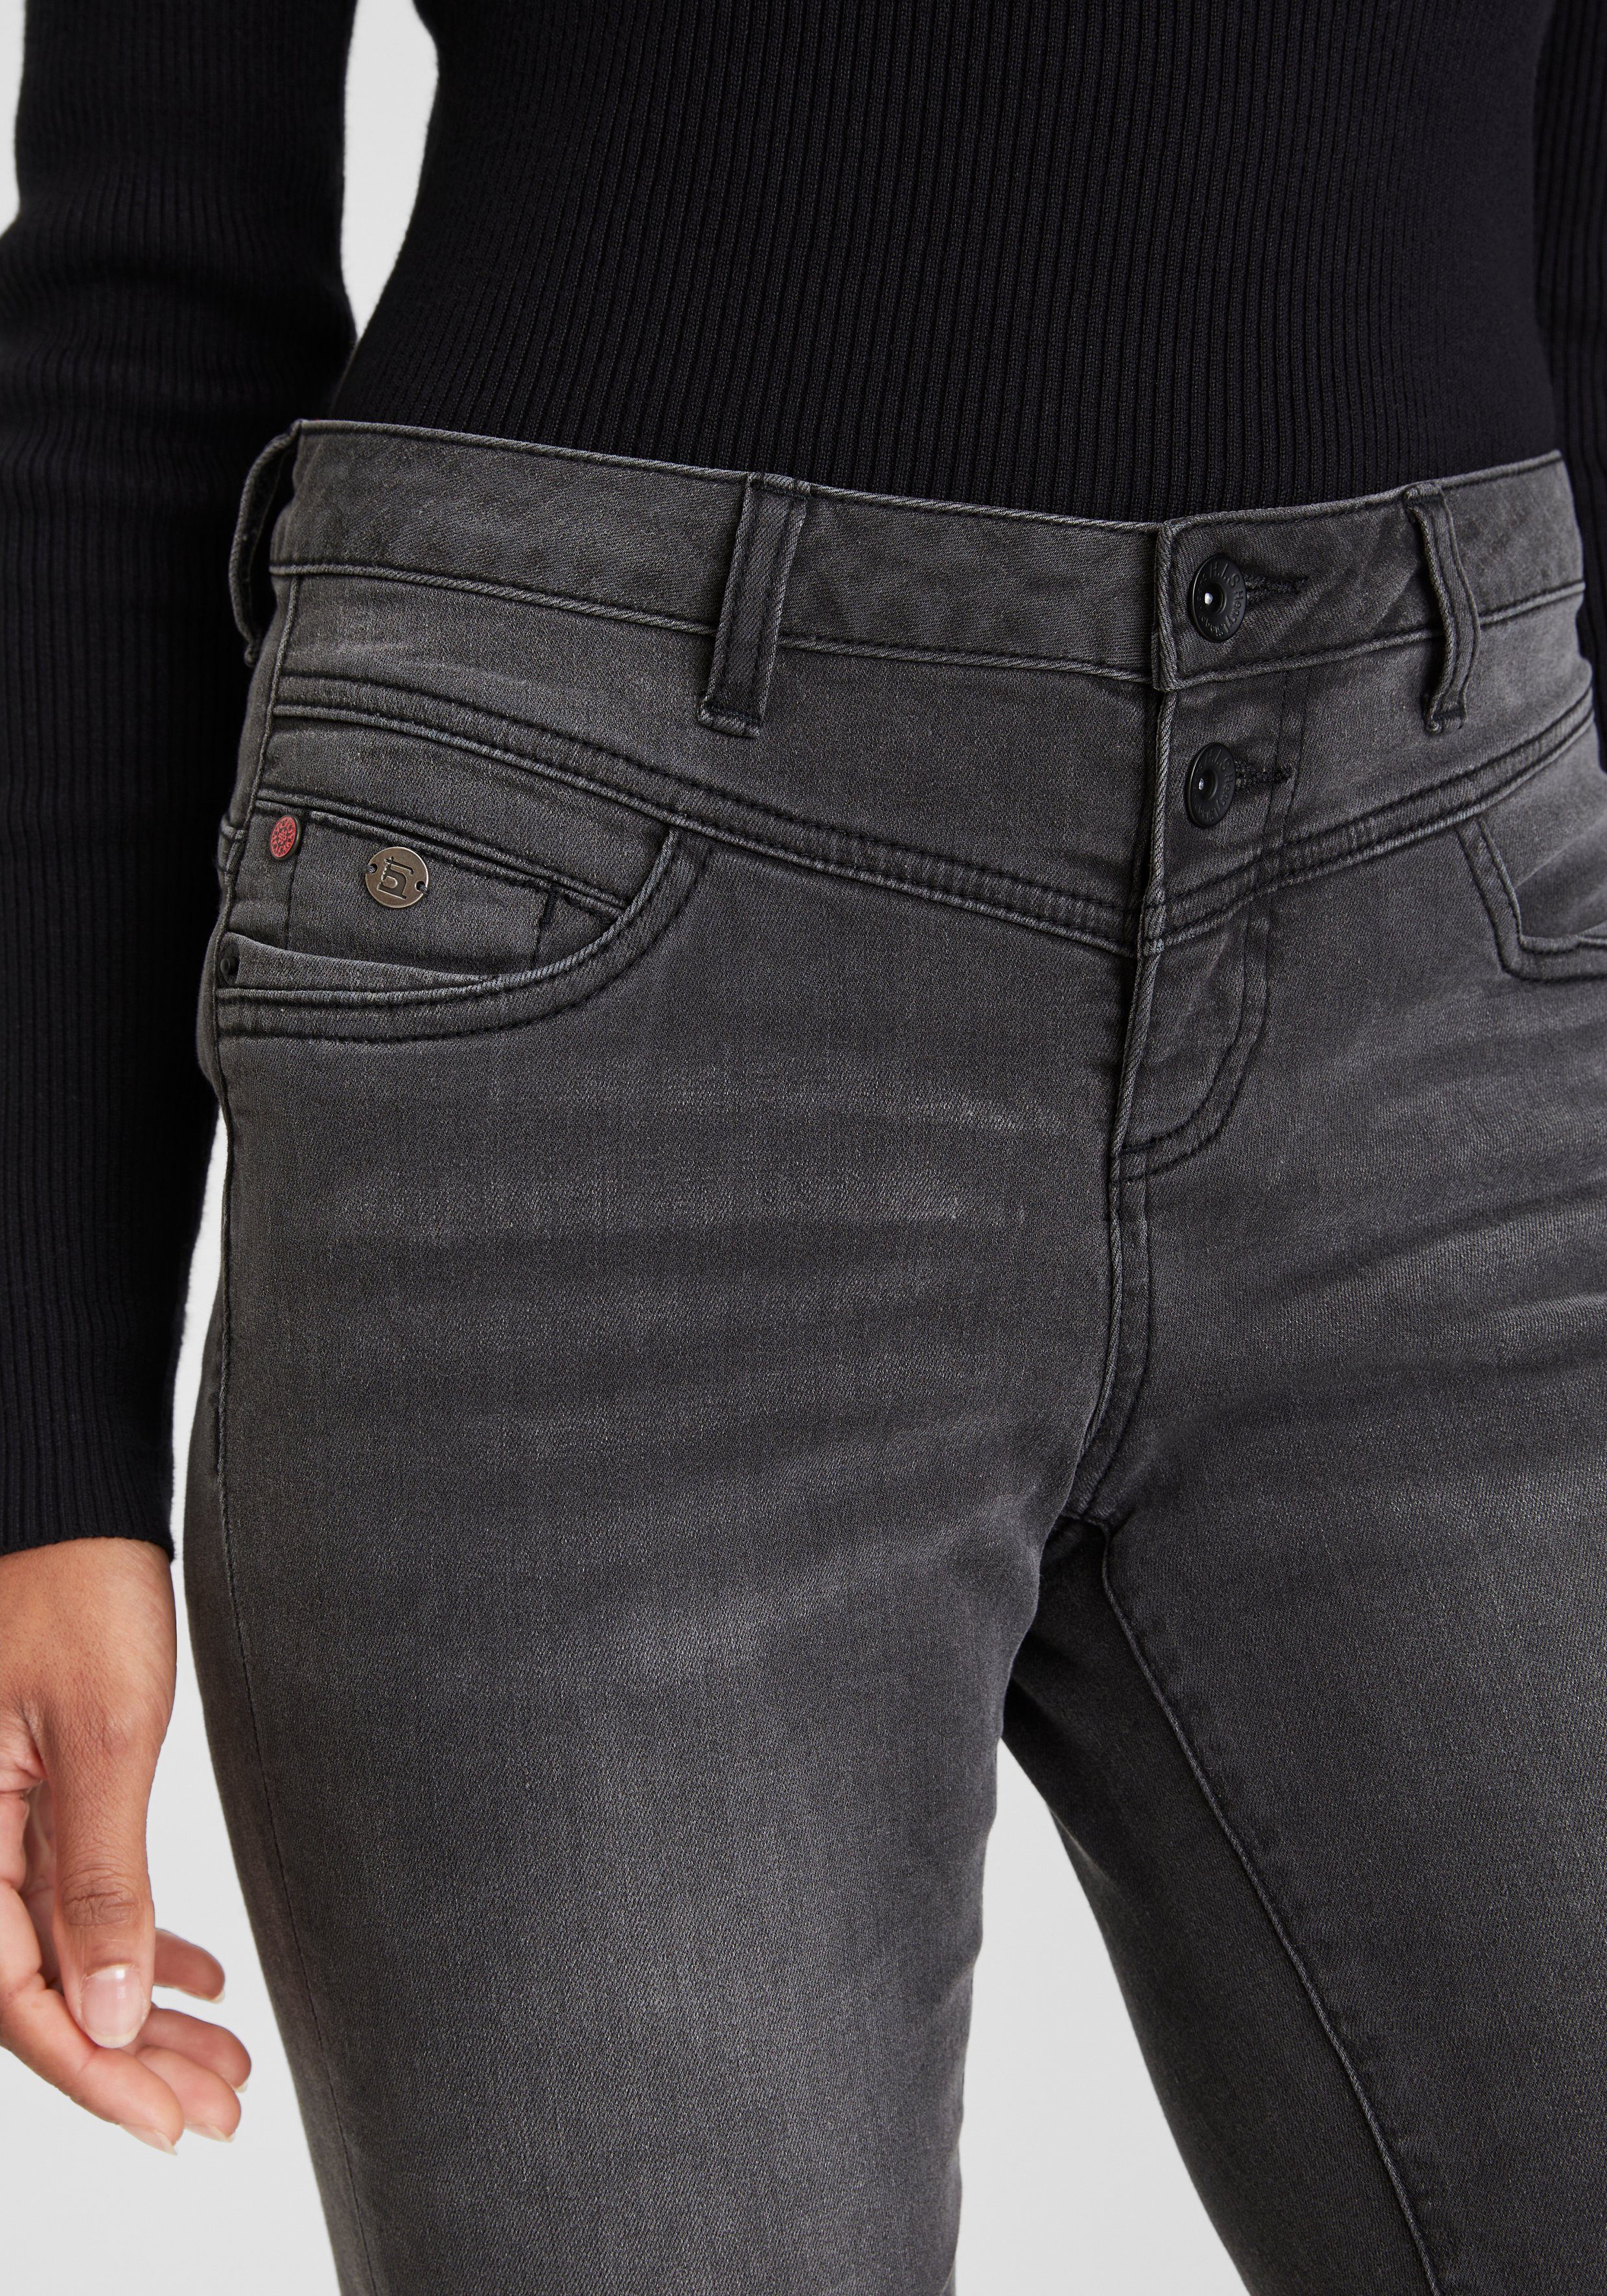 5-Pocket-Jeans H.I.S Produktion durch grey dark Wash djunaHS Ozon wassersparende ökologische,